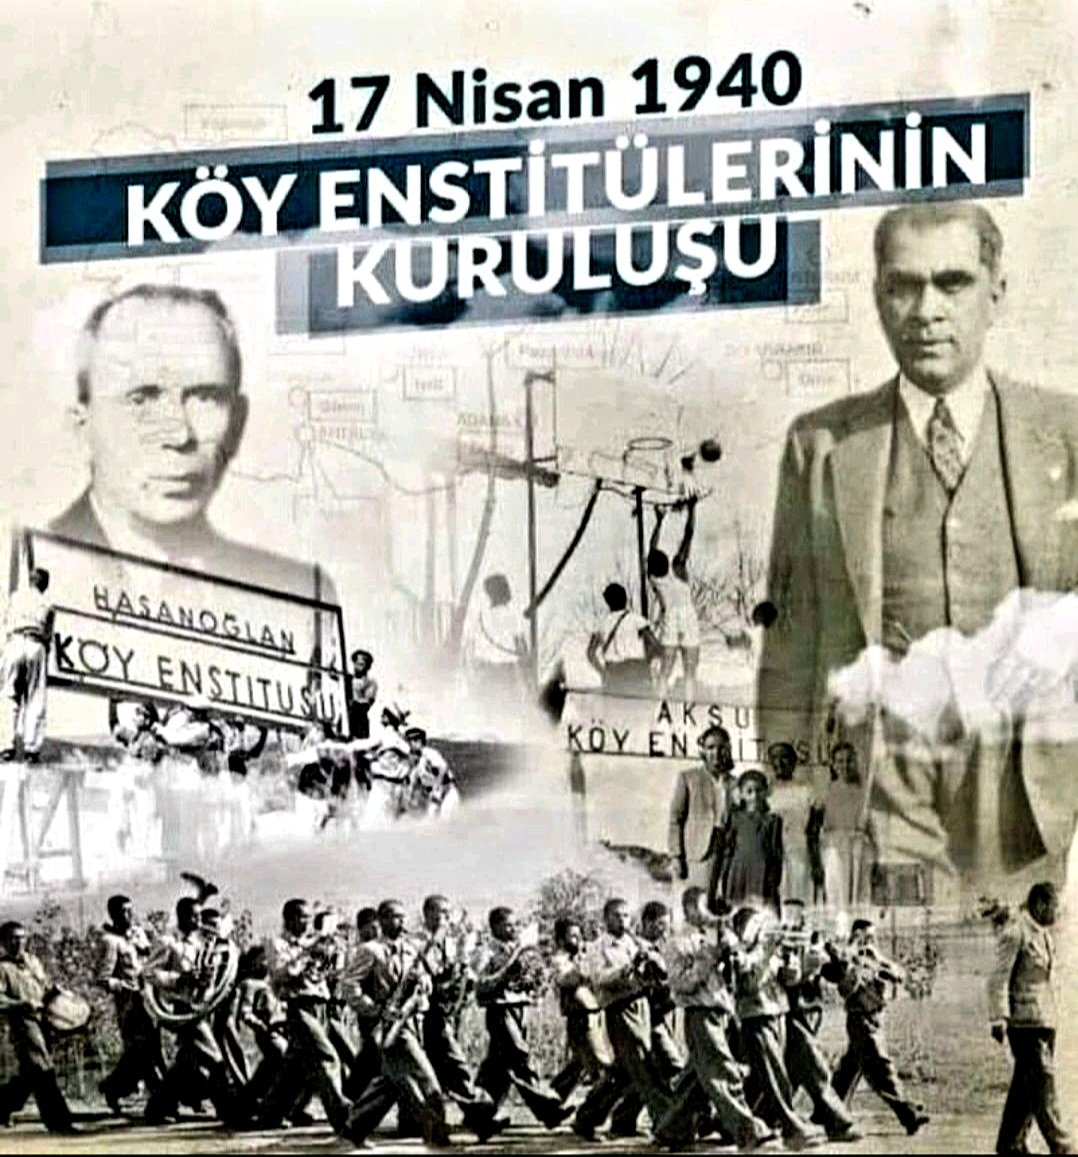 🇹🇷BİLİMSEL EĞİTİMİN ÇOK OLSUN TÜRK MİLLETİ🇹🇷 'Burada hiçbir balık uçmaya, hiçbir kuş yüzmeye zorlanmaz.' #Türk #Atatürk #NeMutluTürkümDiyene #KöyEnstitüleri #Eğitim